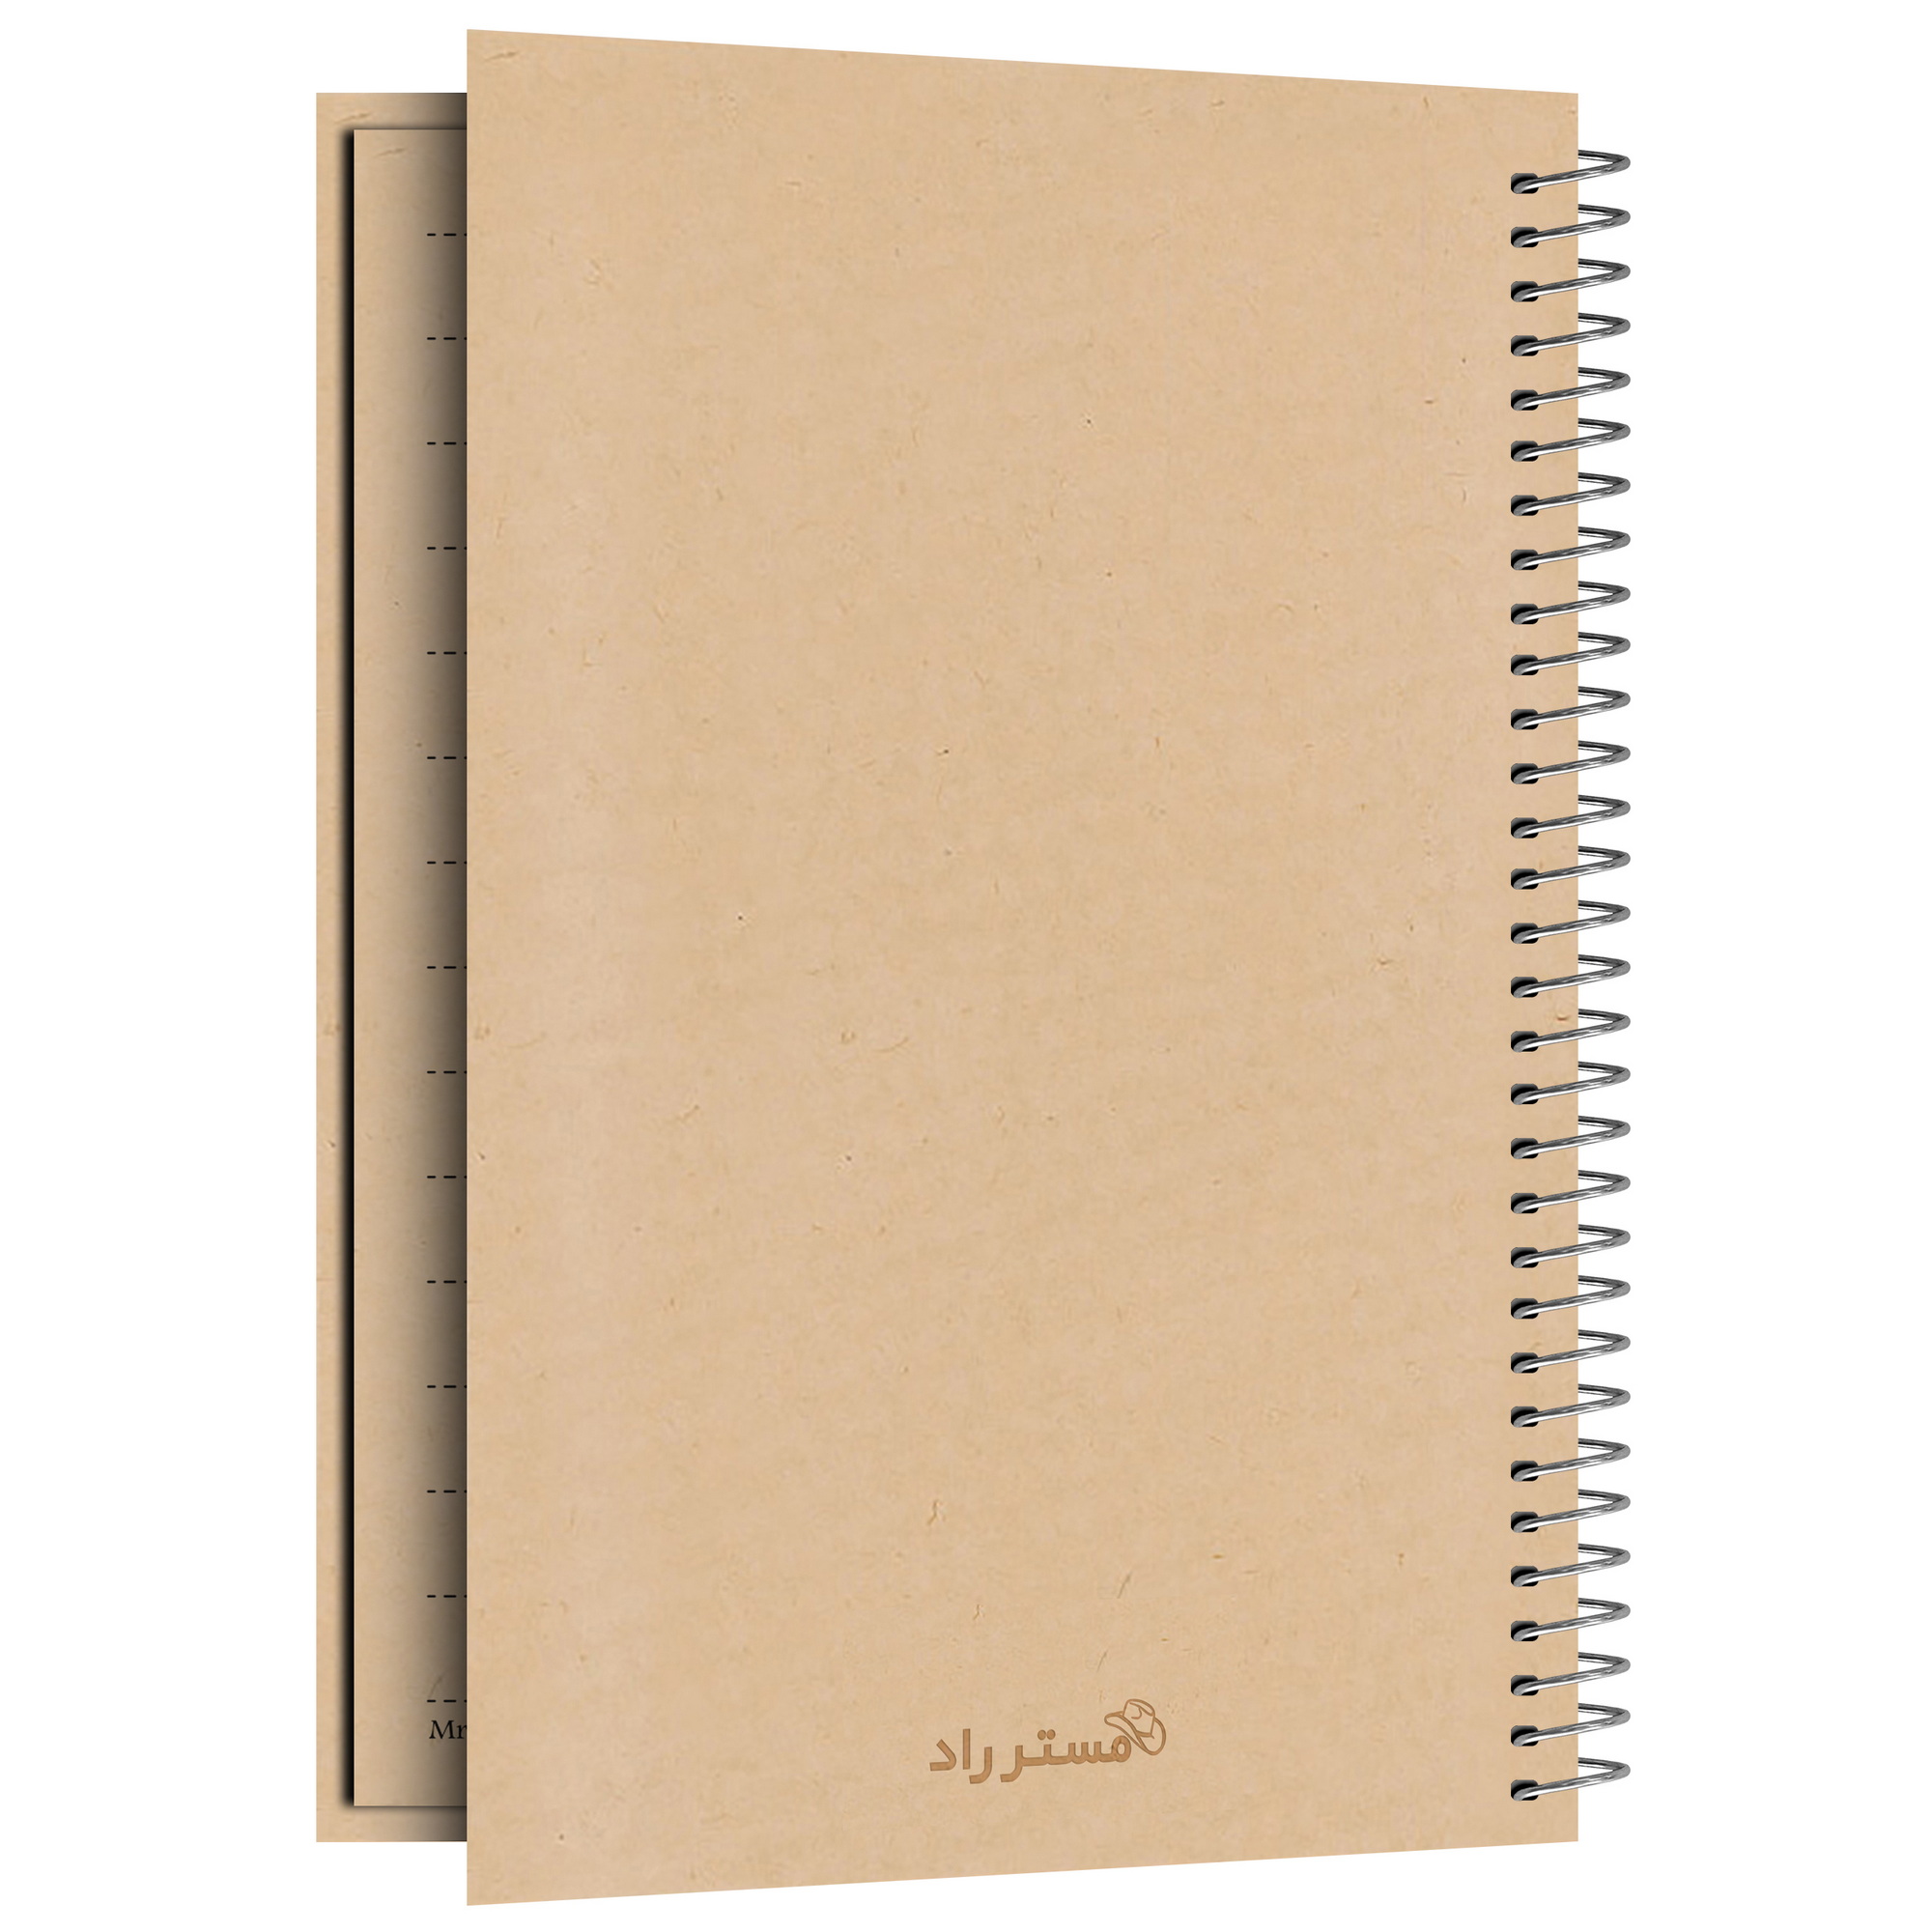 دفترچه یادداشت مستر راد مدل to do list طرح کرافت کد fiory 1901